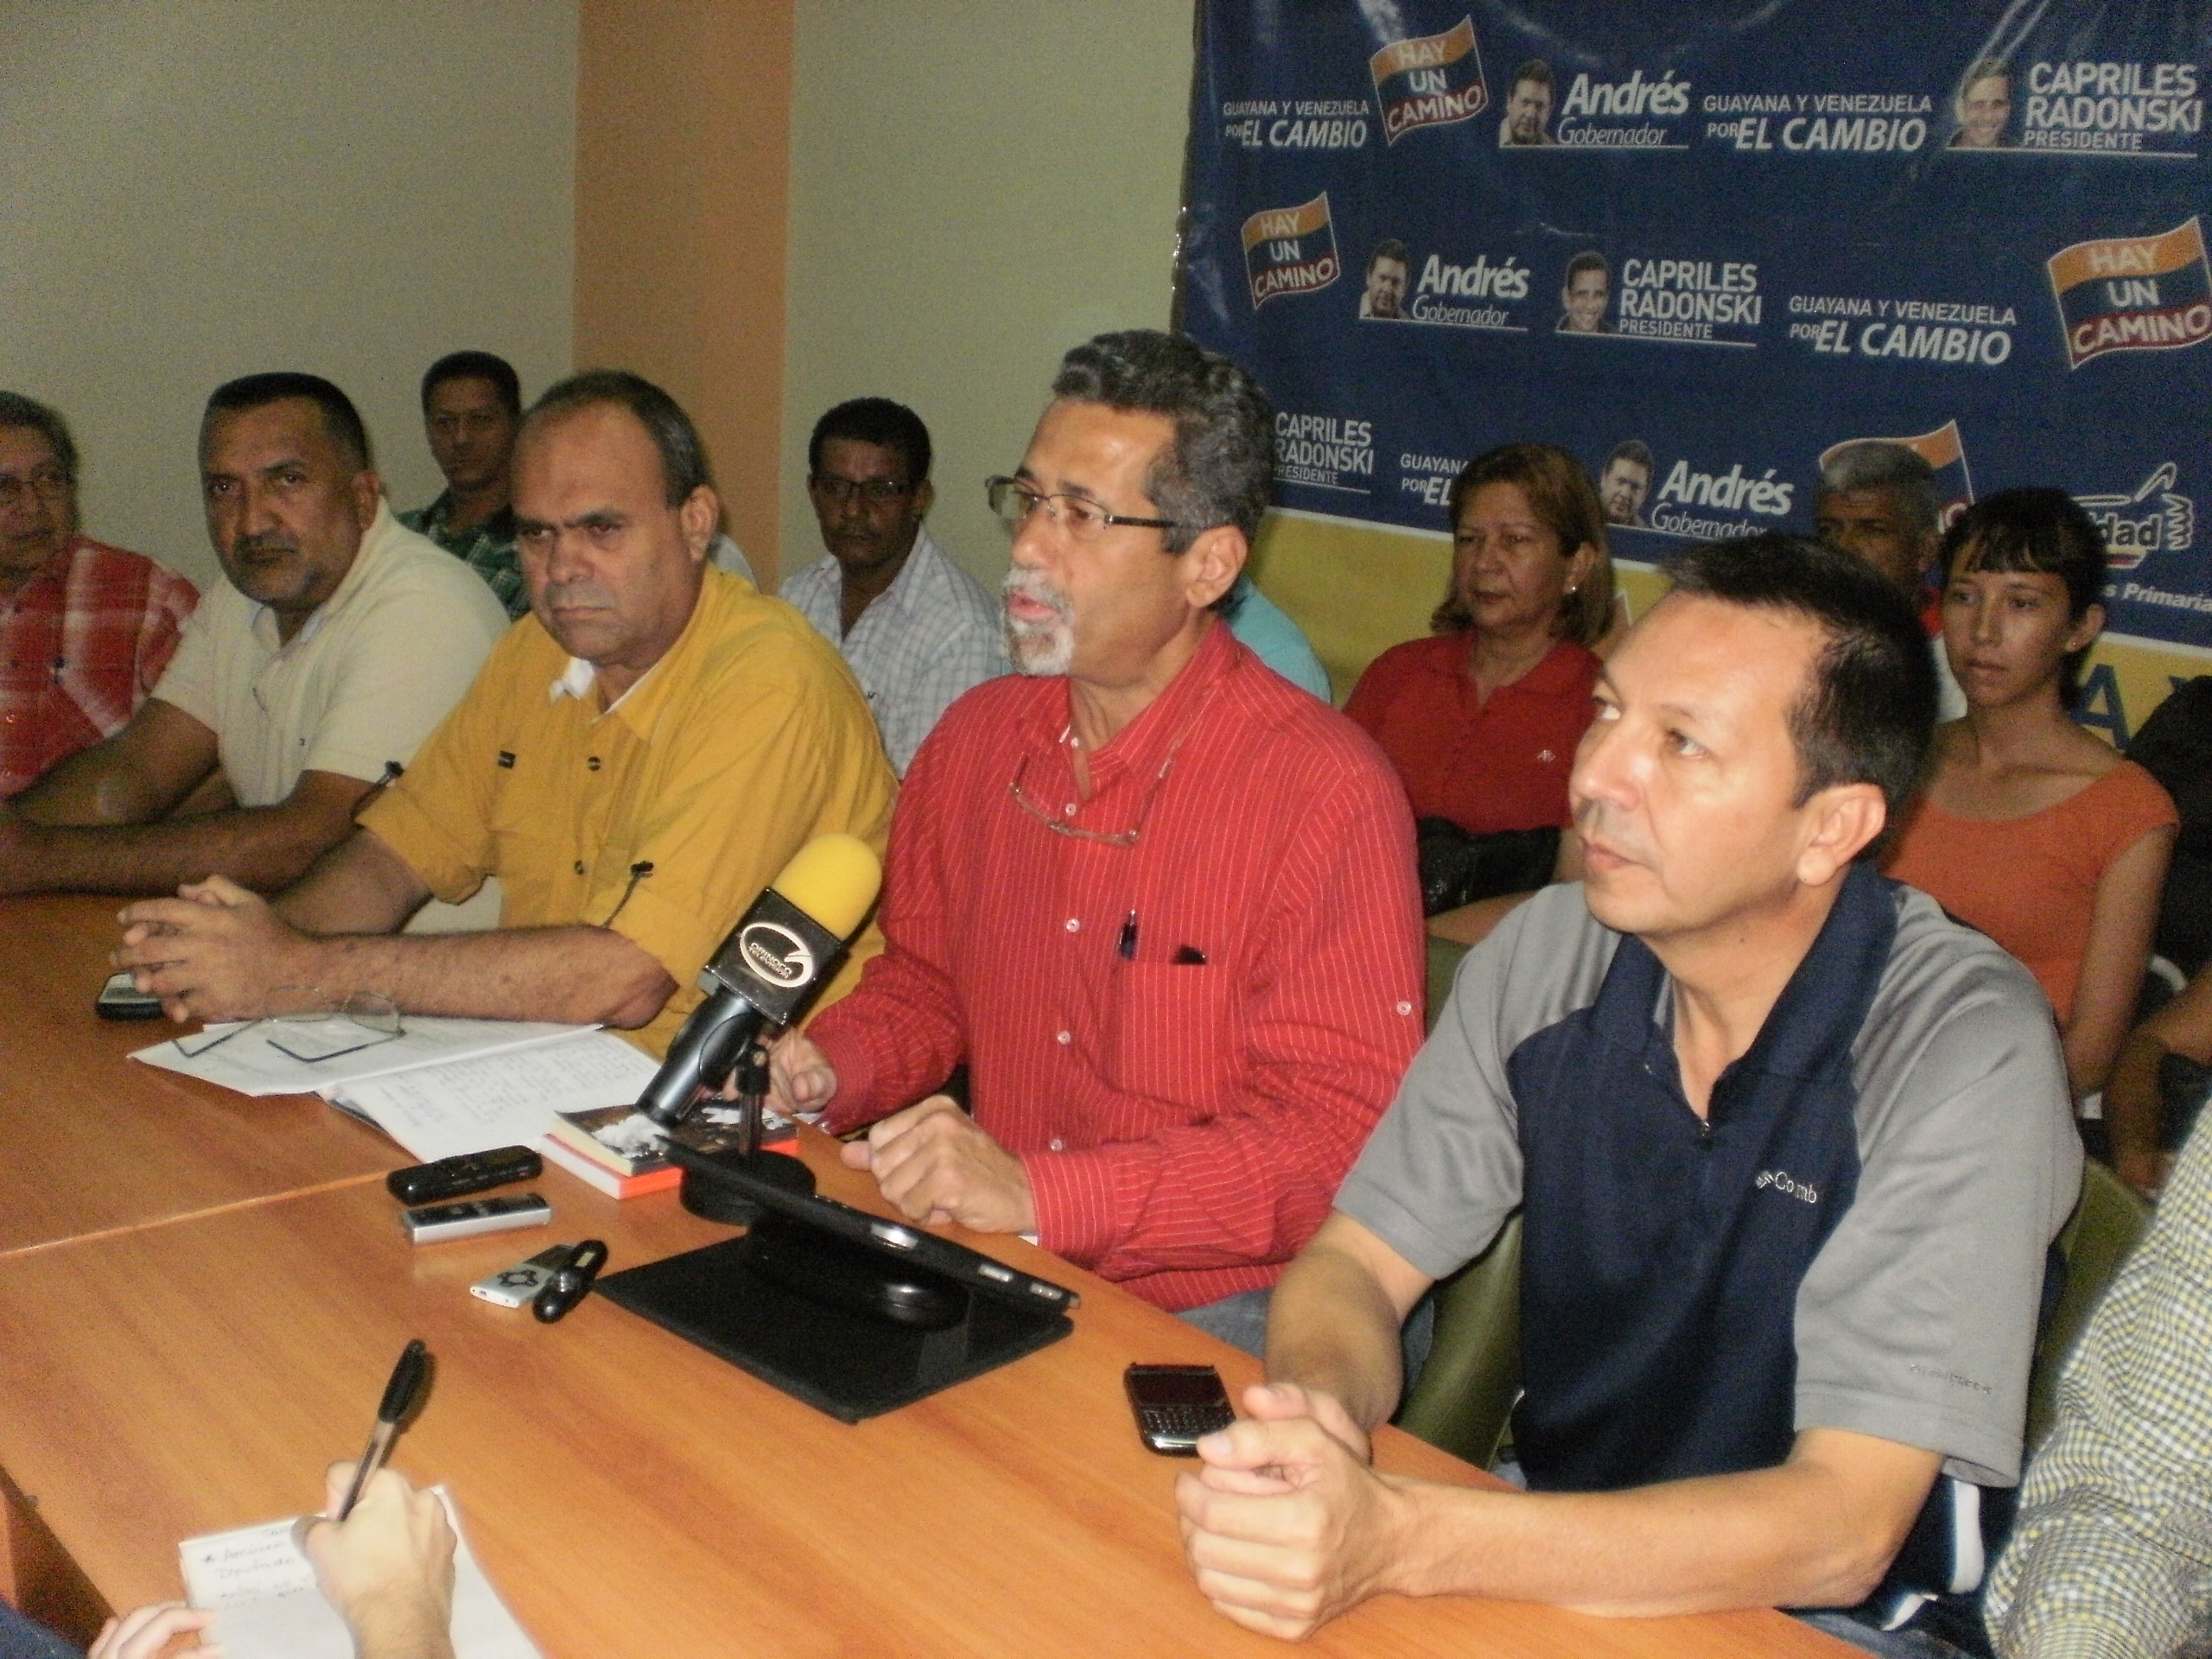 Tiara Air Aruba intensifica operaciones comerciales en Venezuela